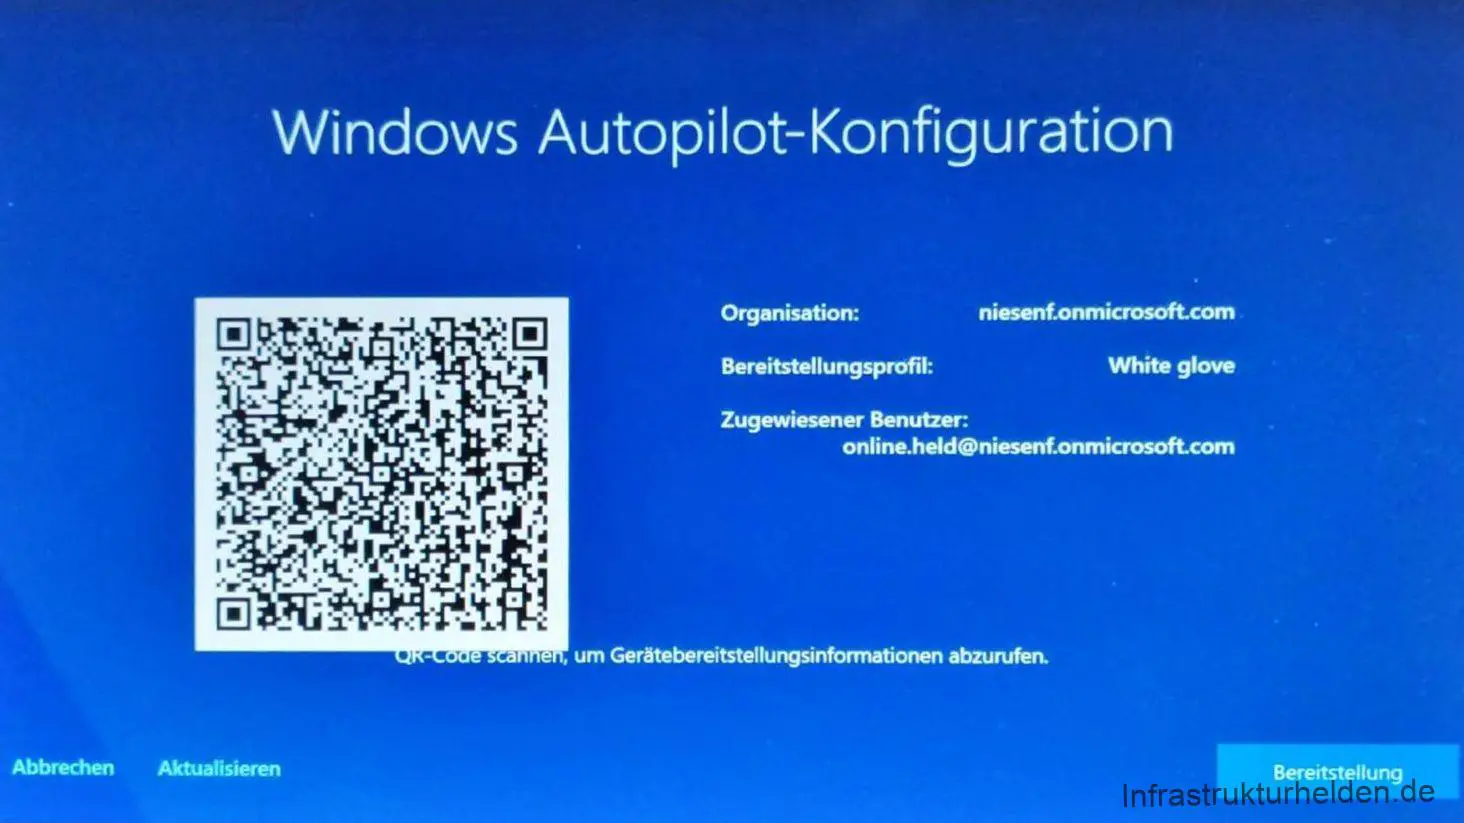 Neues bei Autopilot mit Windows 10 1903 (Updated)